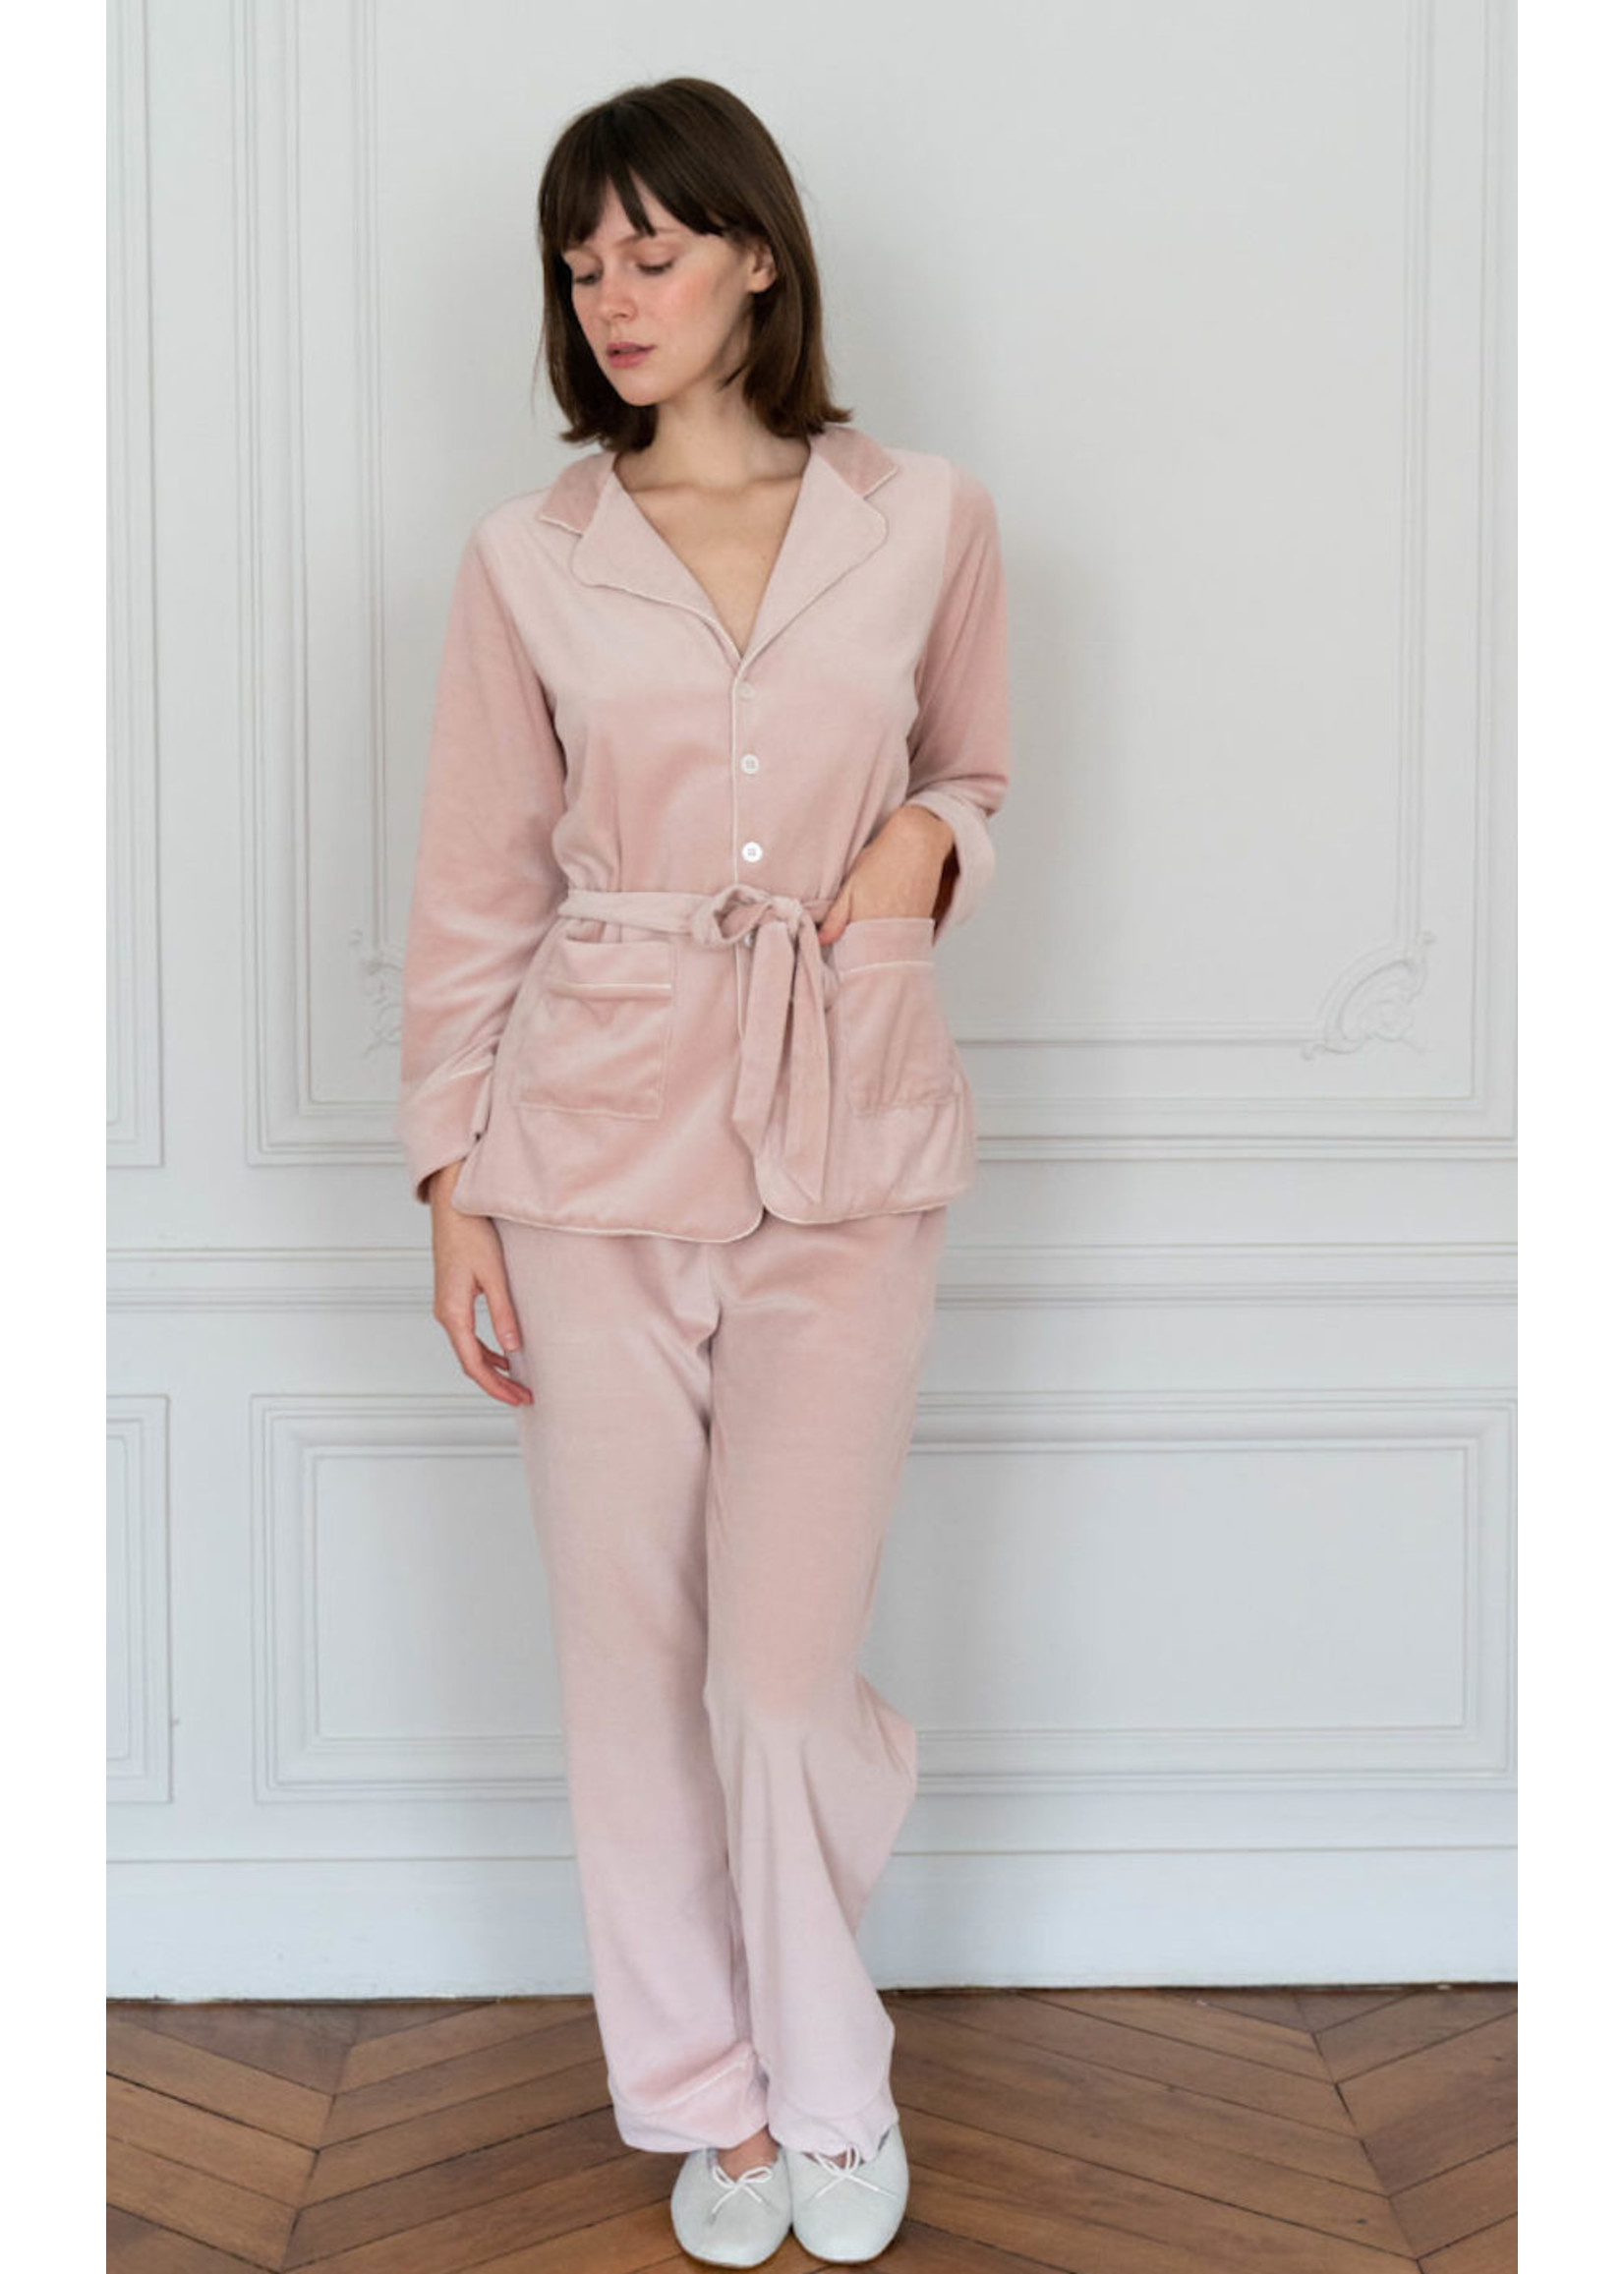 Lalide à Paris Carla Pink Velvet Pajamas Set